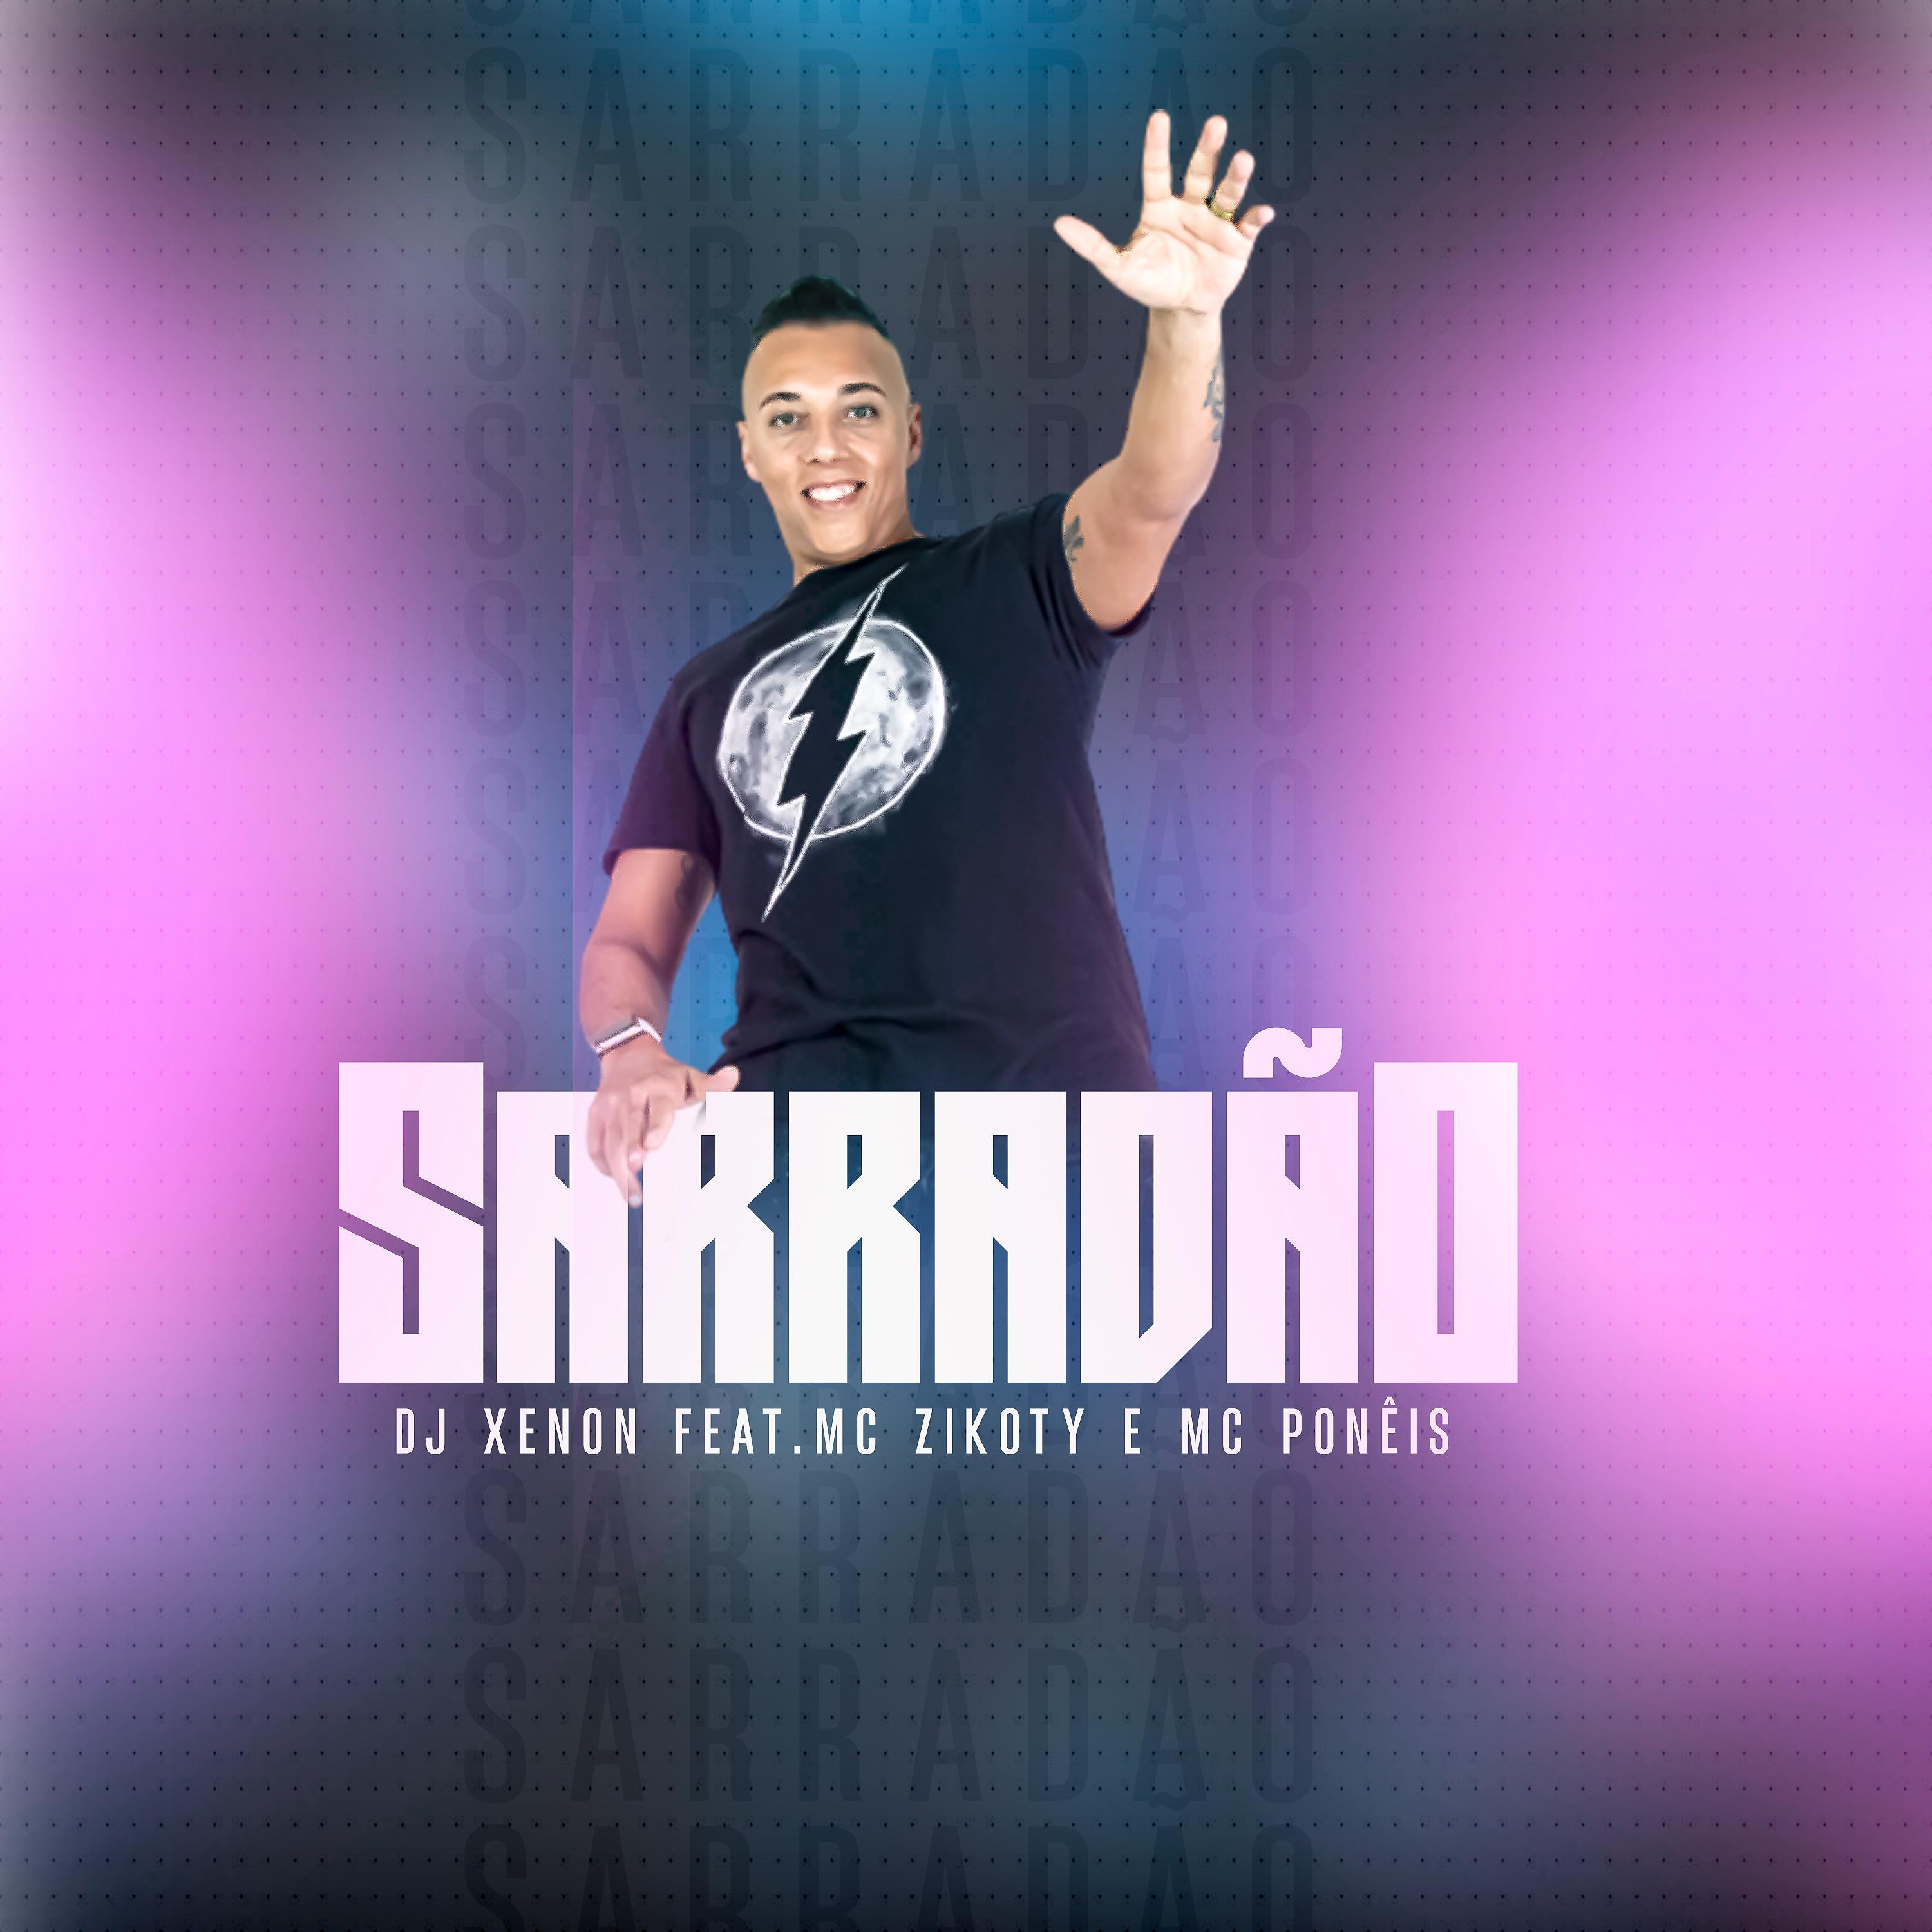 Постер альбома Sarradão